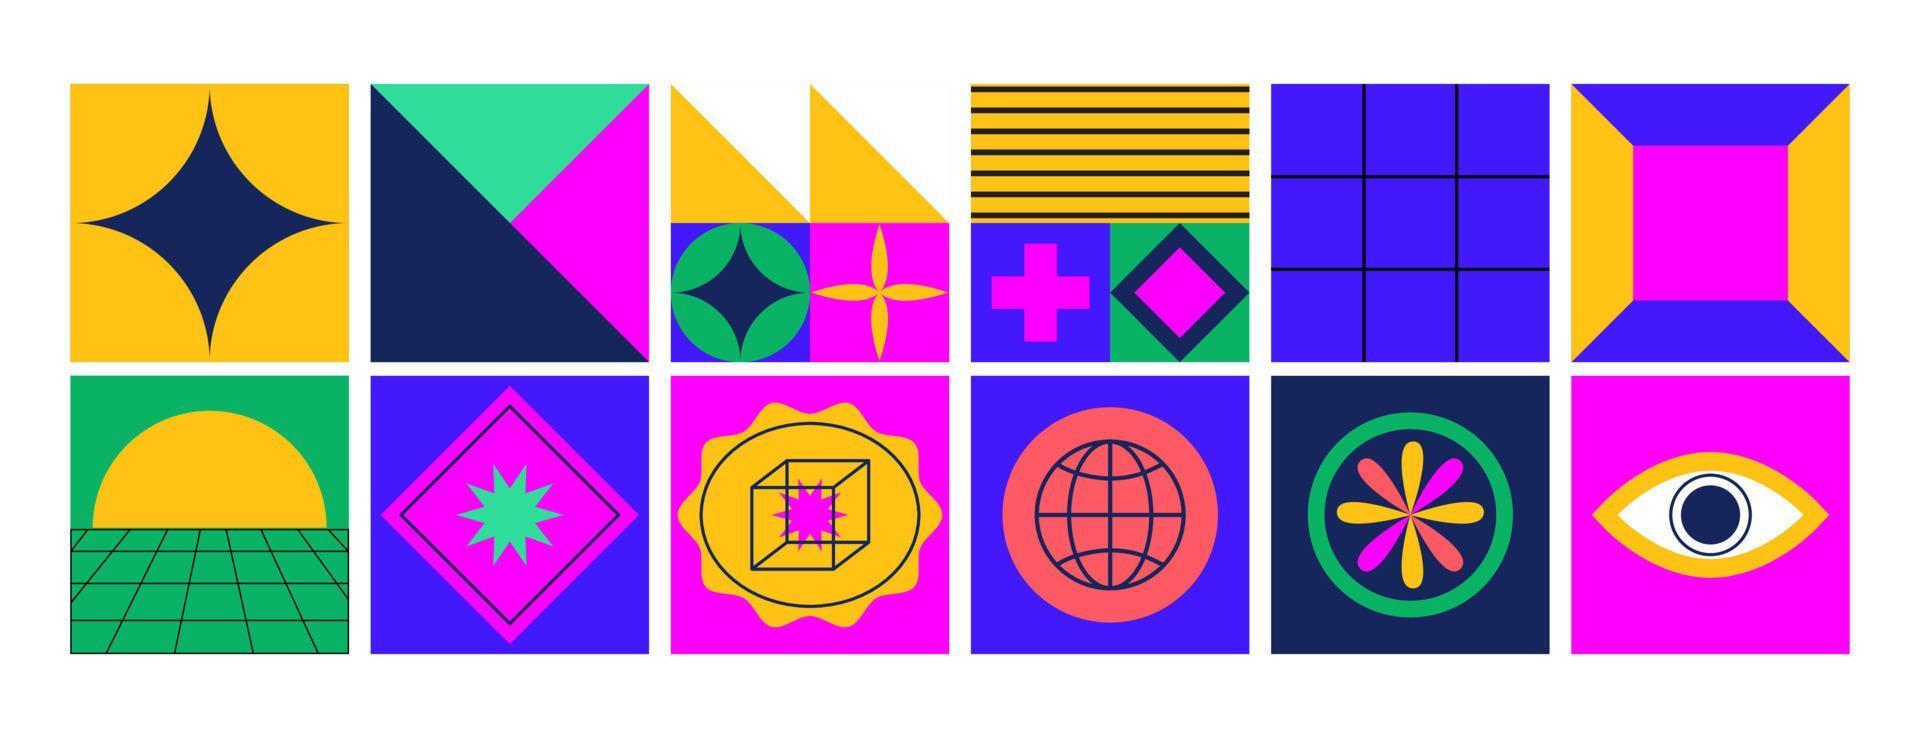 retro resumen geométrico formas, parches, insignias pegatina embalar. de moda gráfico futurista elementos. y2k, años 70, años 80, 90s Clásico estético. vector